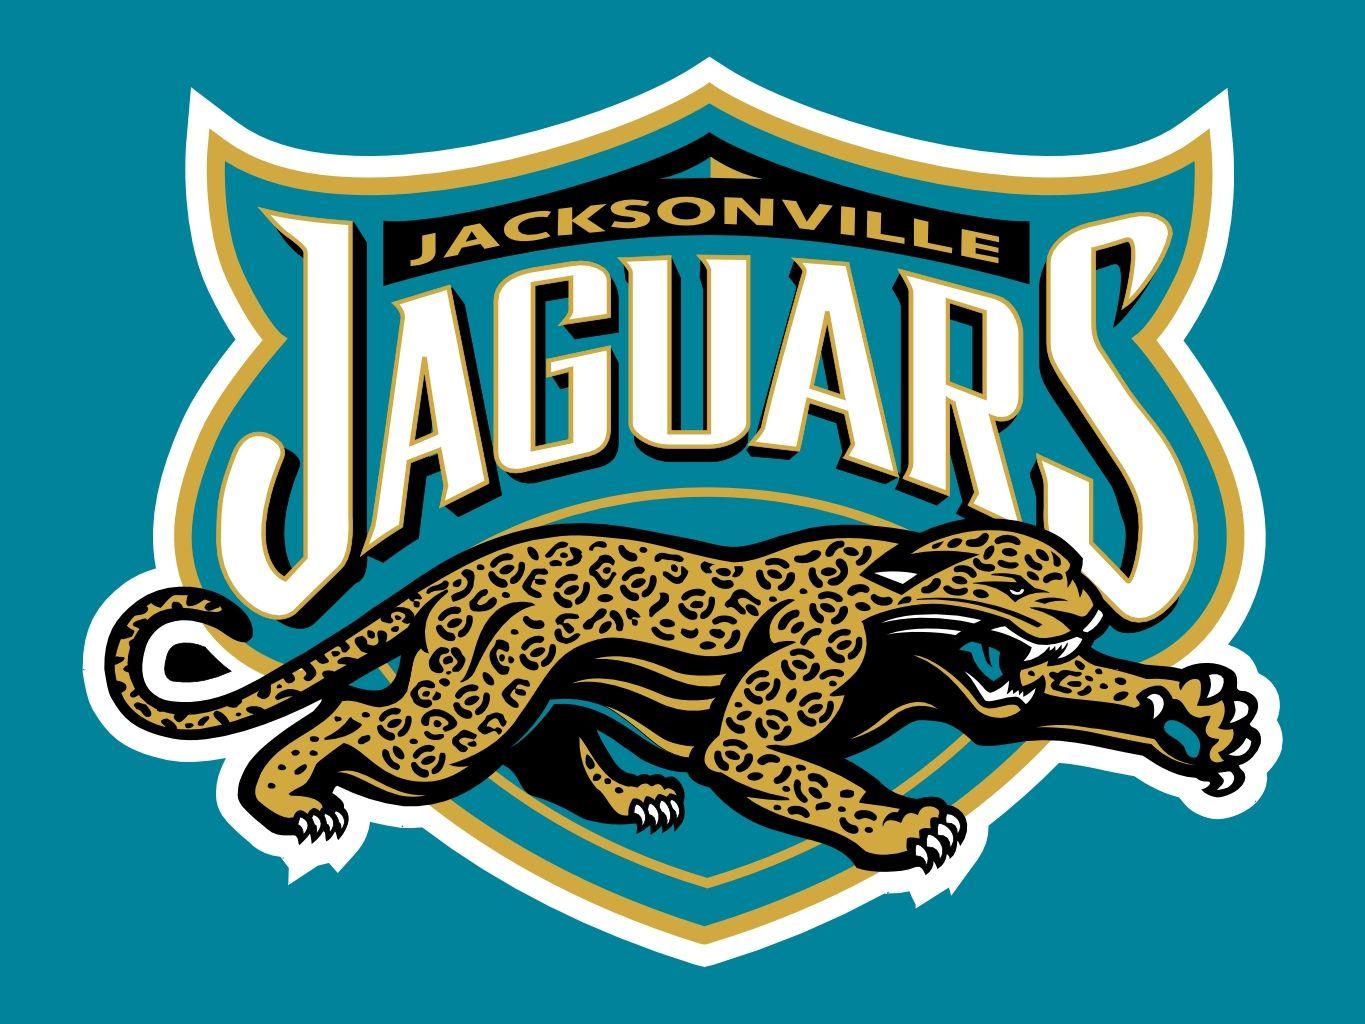 NFL Jaguars New Logo - jacksonville jaguars logos - Yahoo Image Search Results | NFL / NBA ...